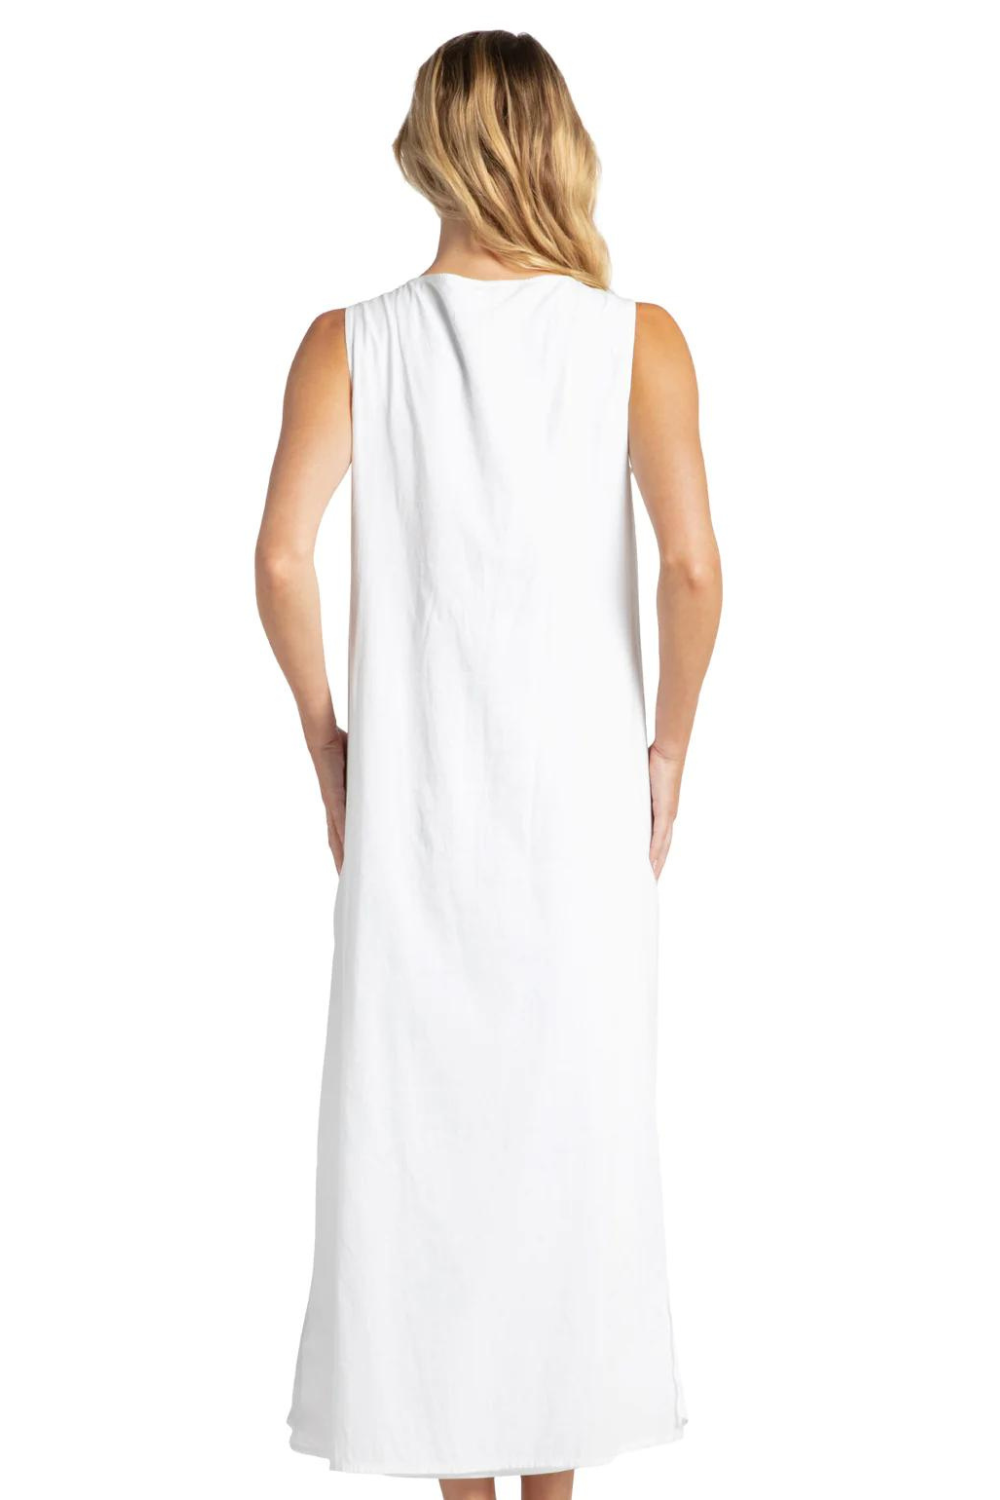 Cabana Life Side Slit Maxi Dress - White